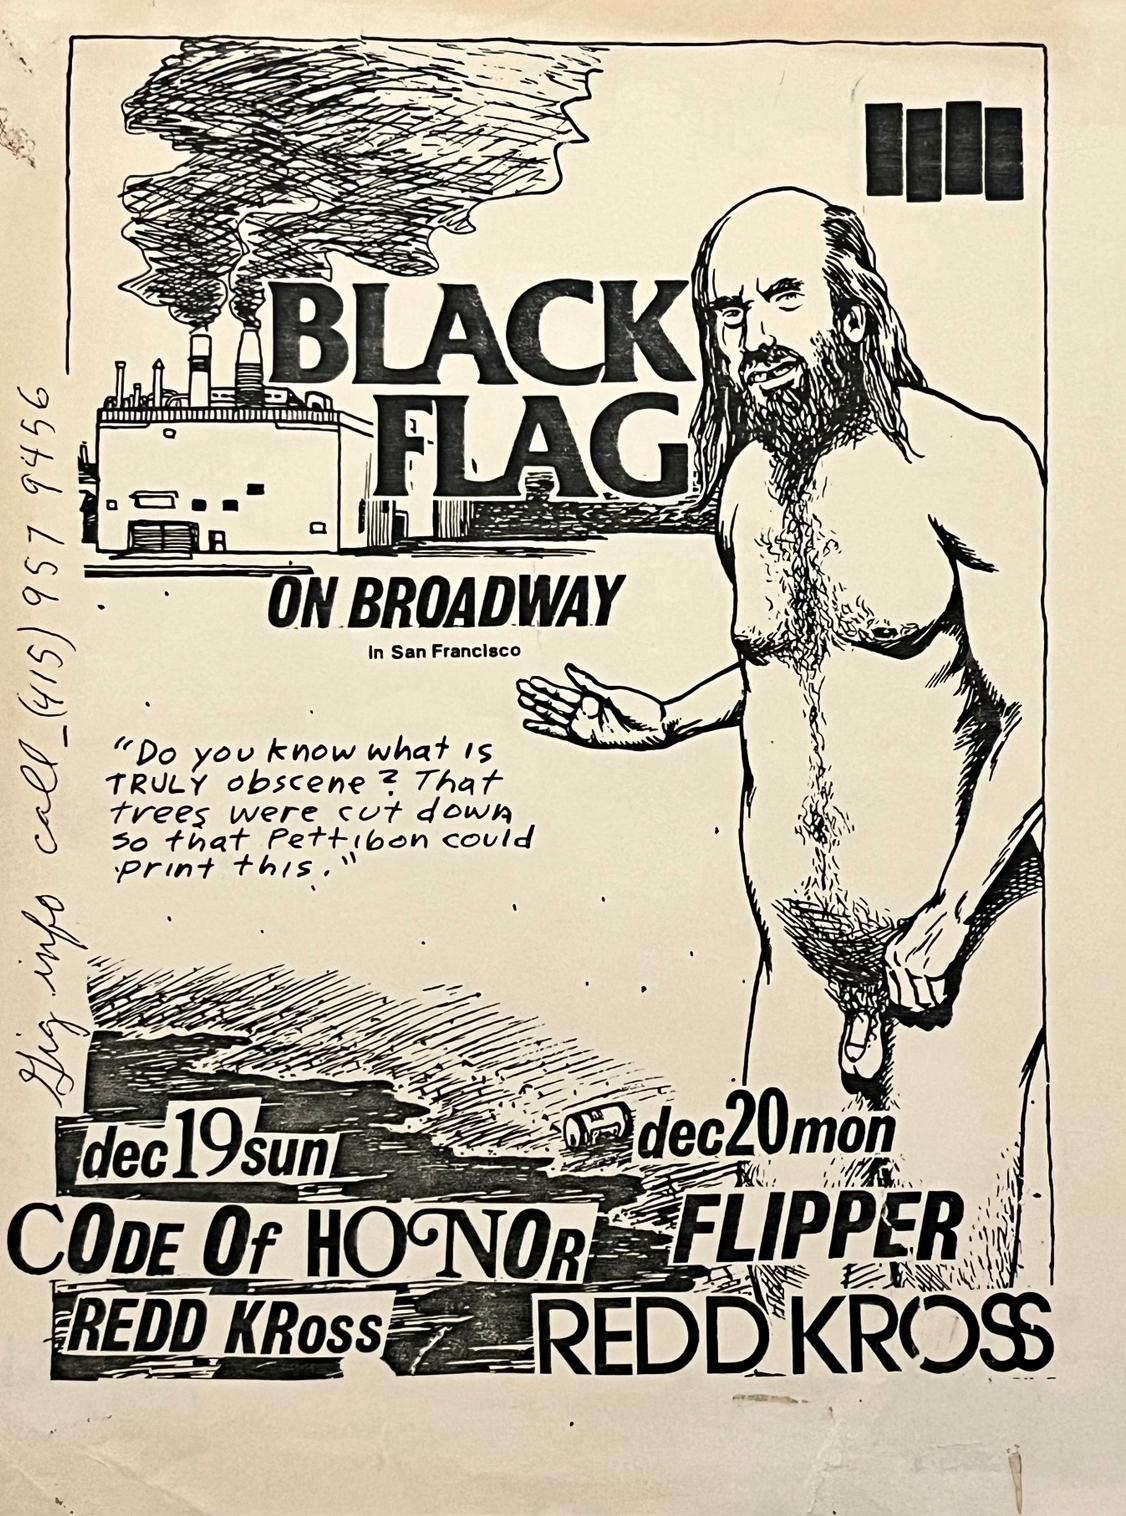 Tract illustré de Raymond Pettibon, publié à l'occasion de l'exposition "Black Flag" :  Black Flag on Broadway / 19 déc. 1982 / 20 déc. 1982 avec Code of Honor, Redd Kross, Nig-Heist, & Flipper. Une illustration punk rare et frappante de